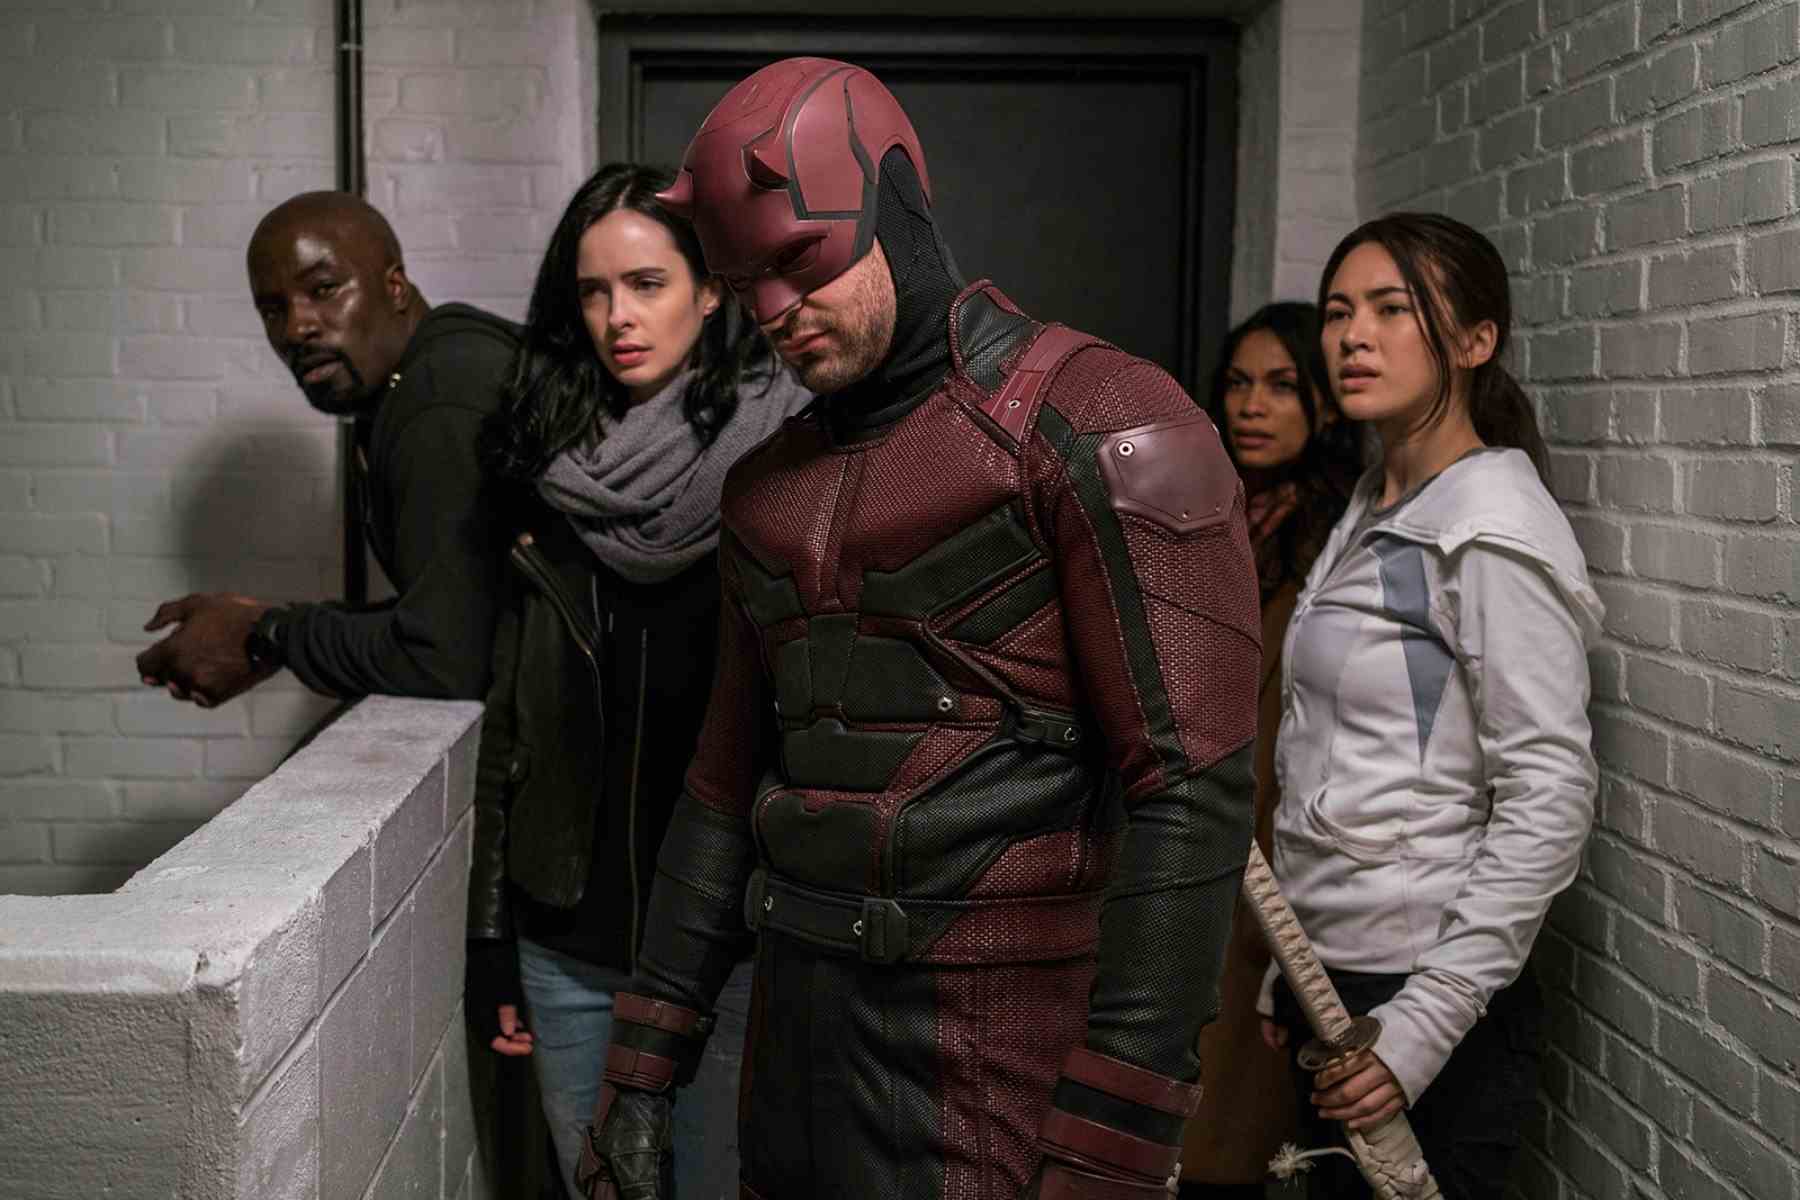 Disney+ Plus braucht Inhalte für Erwachsene wie Marvel Netflix zeigt Daredevil Jessica Jones Luke Cage Iron Fist The Punisher The Defenders